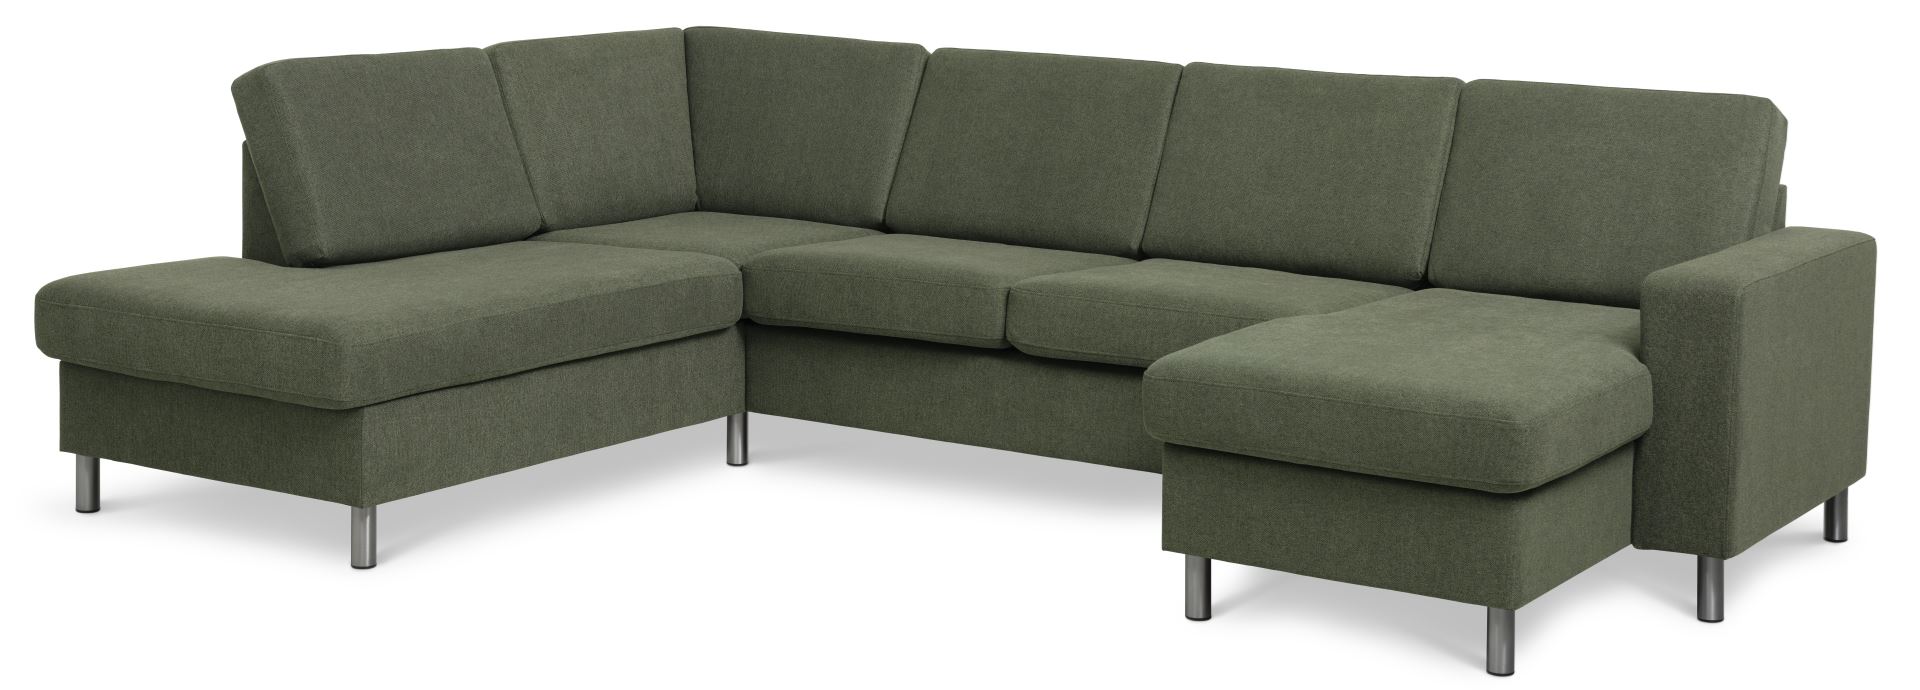 Pan set 4 U OE left sofa med chaiselong - vinter mosgrøn polyester stof og børstet aluminium